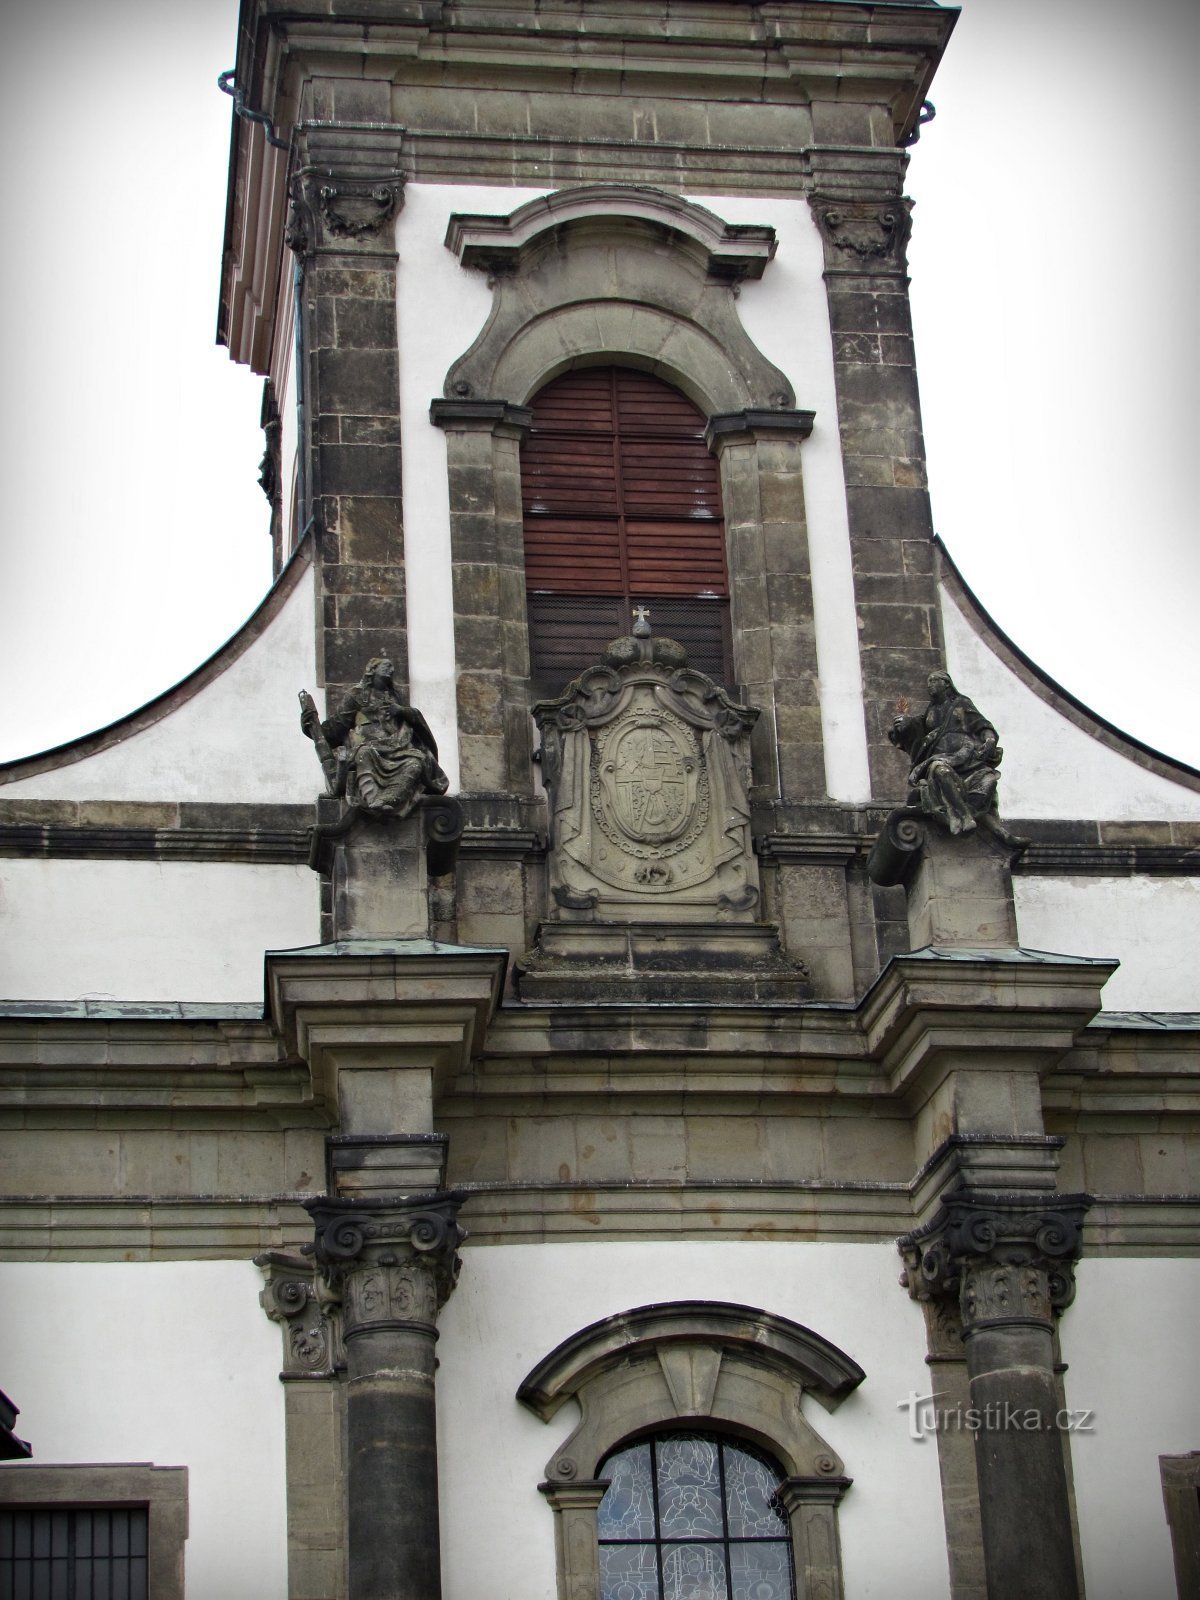 Ústí nad Orlicí - το πιο σημαντικό ιερό κτίριο